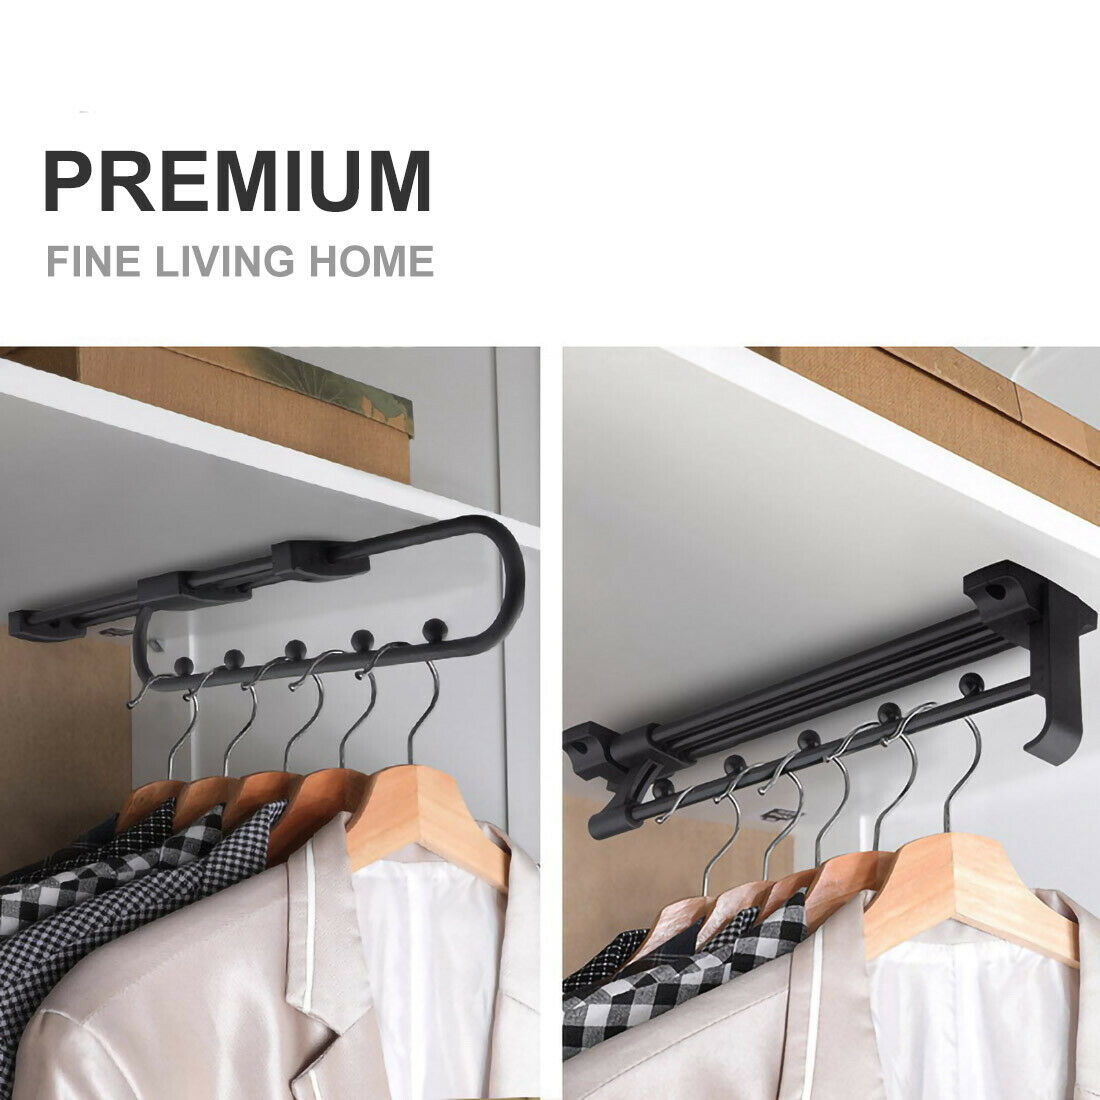 2er Set Ausziehbare Einbau Premium Kleider Stange aus Metall Hochwertig für Kleiderbügel